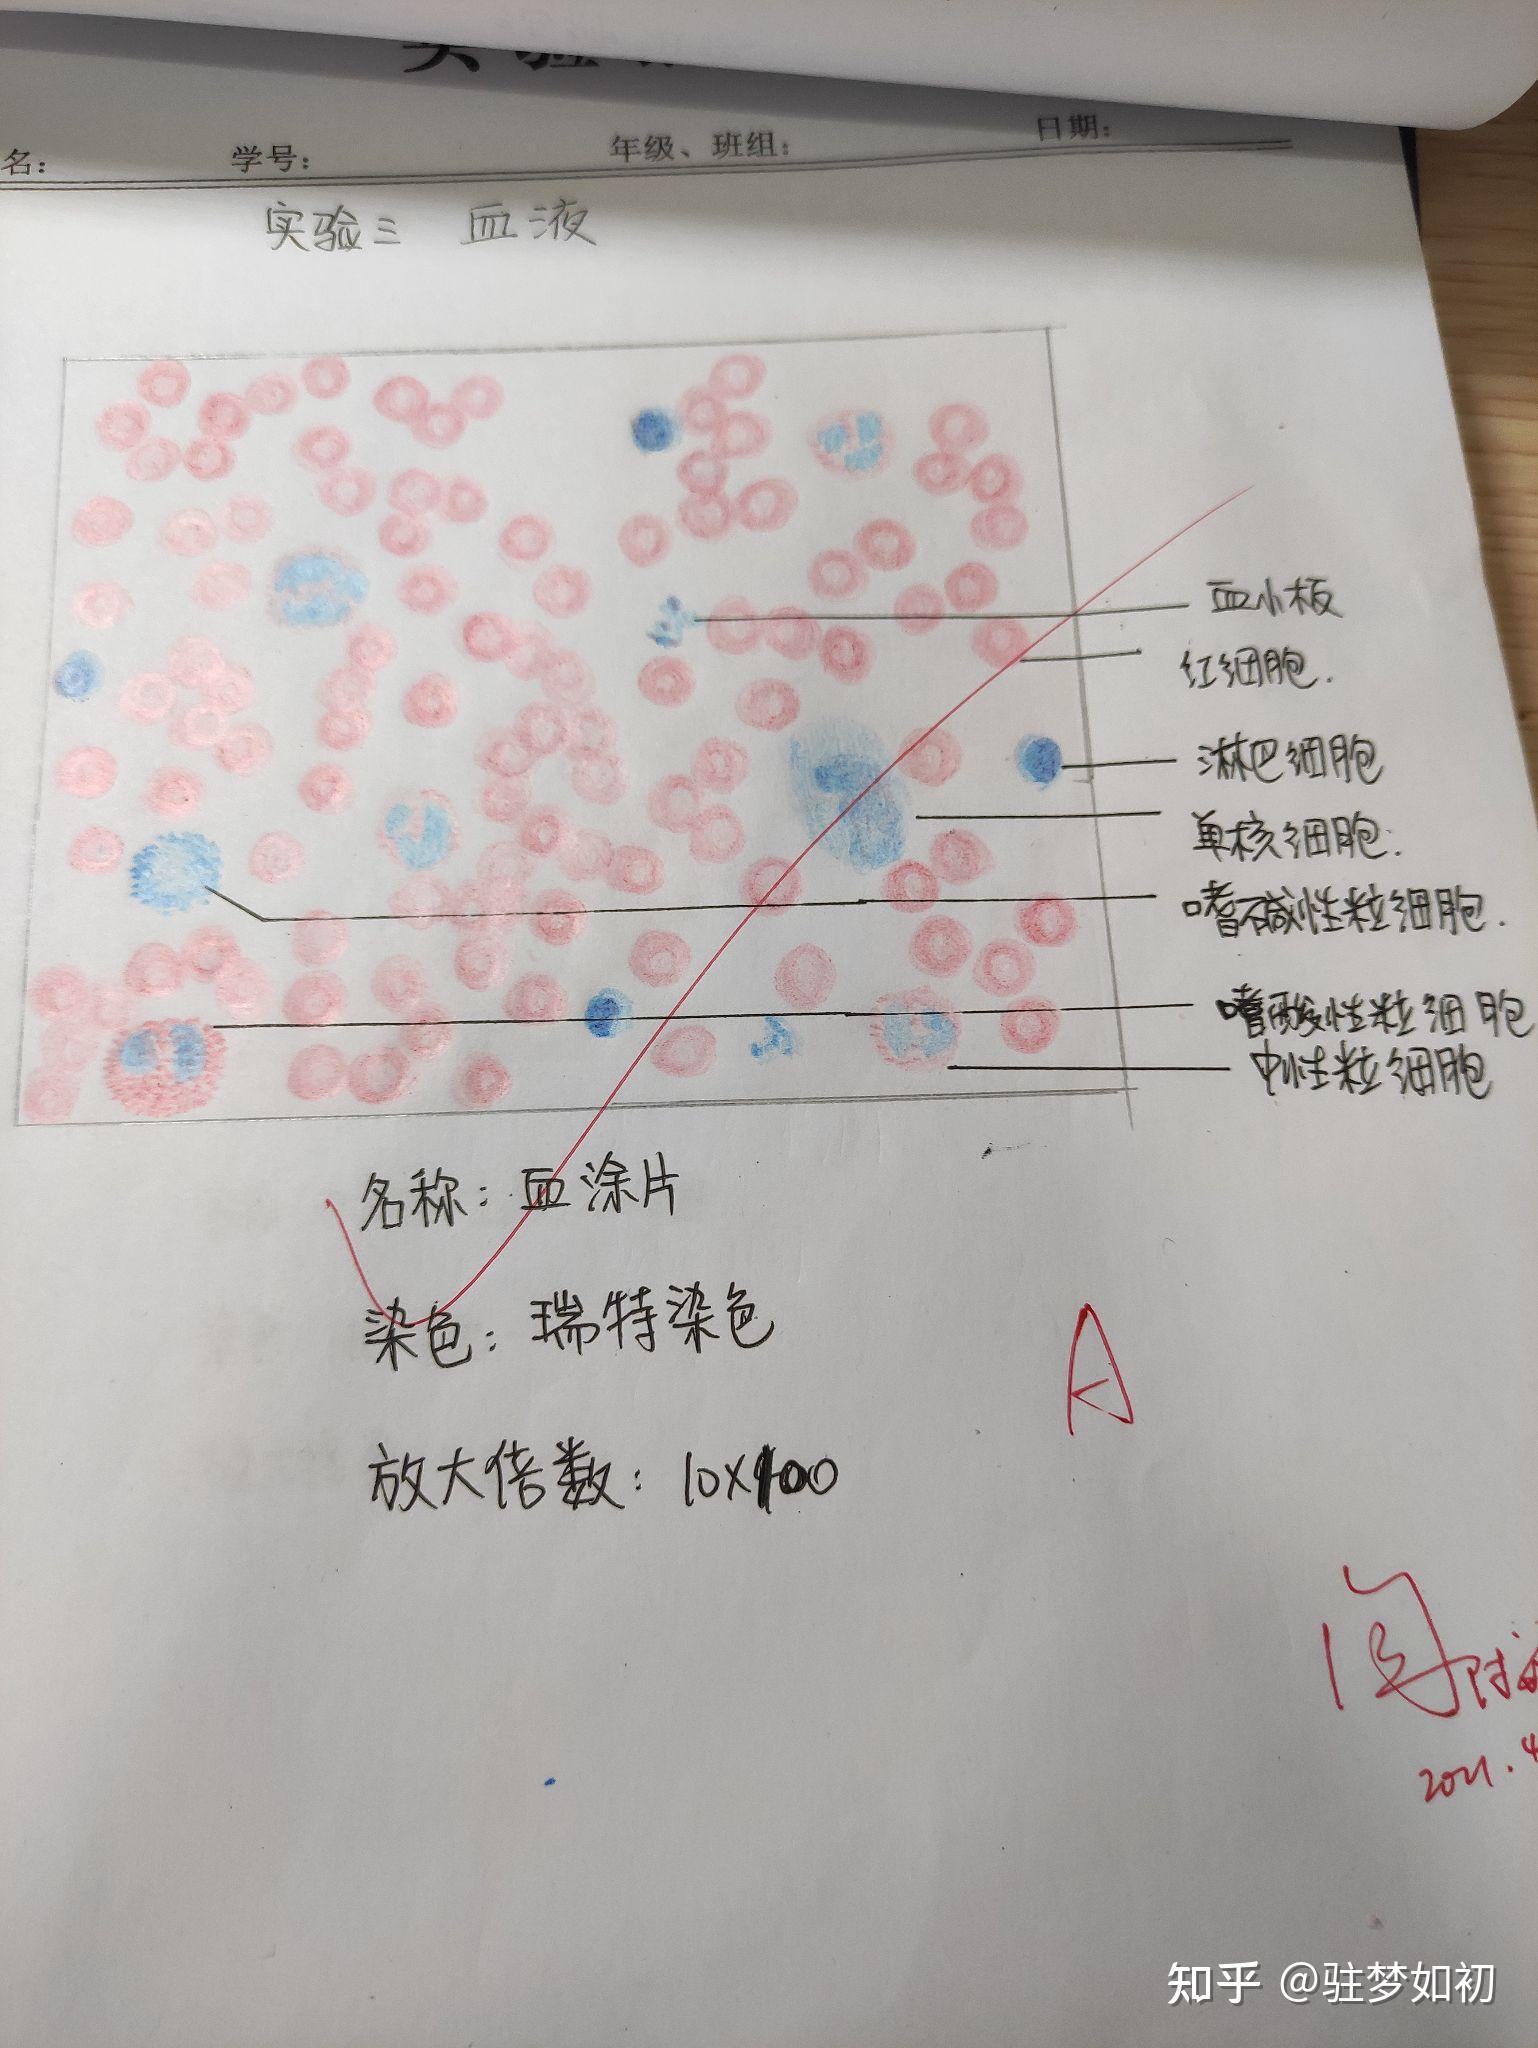 红细胞手绘图红蓝图片